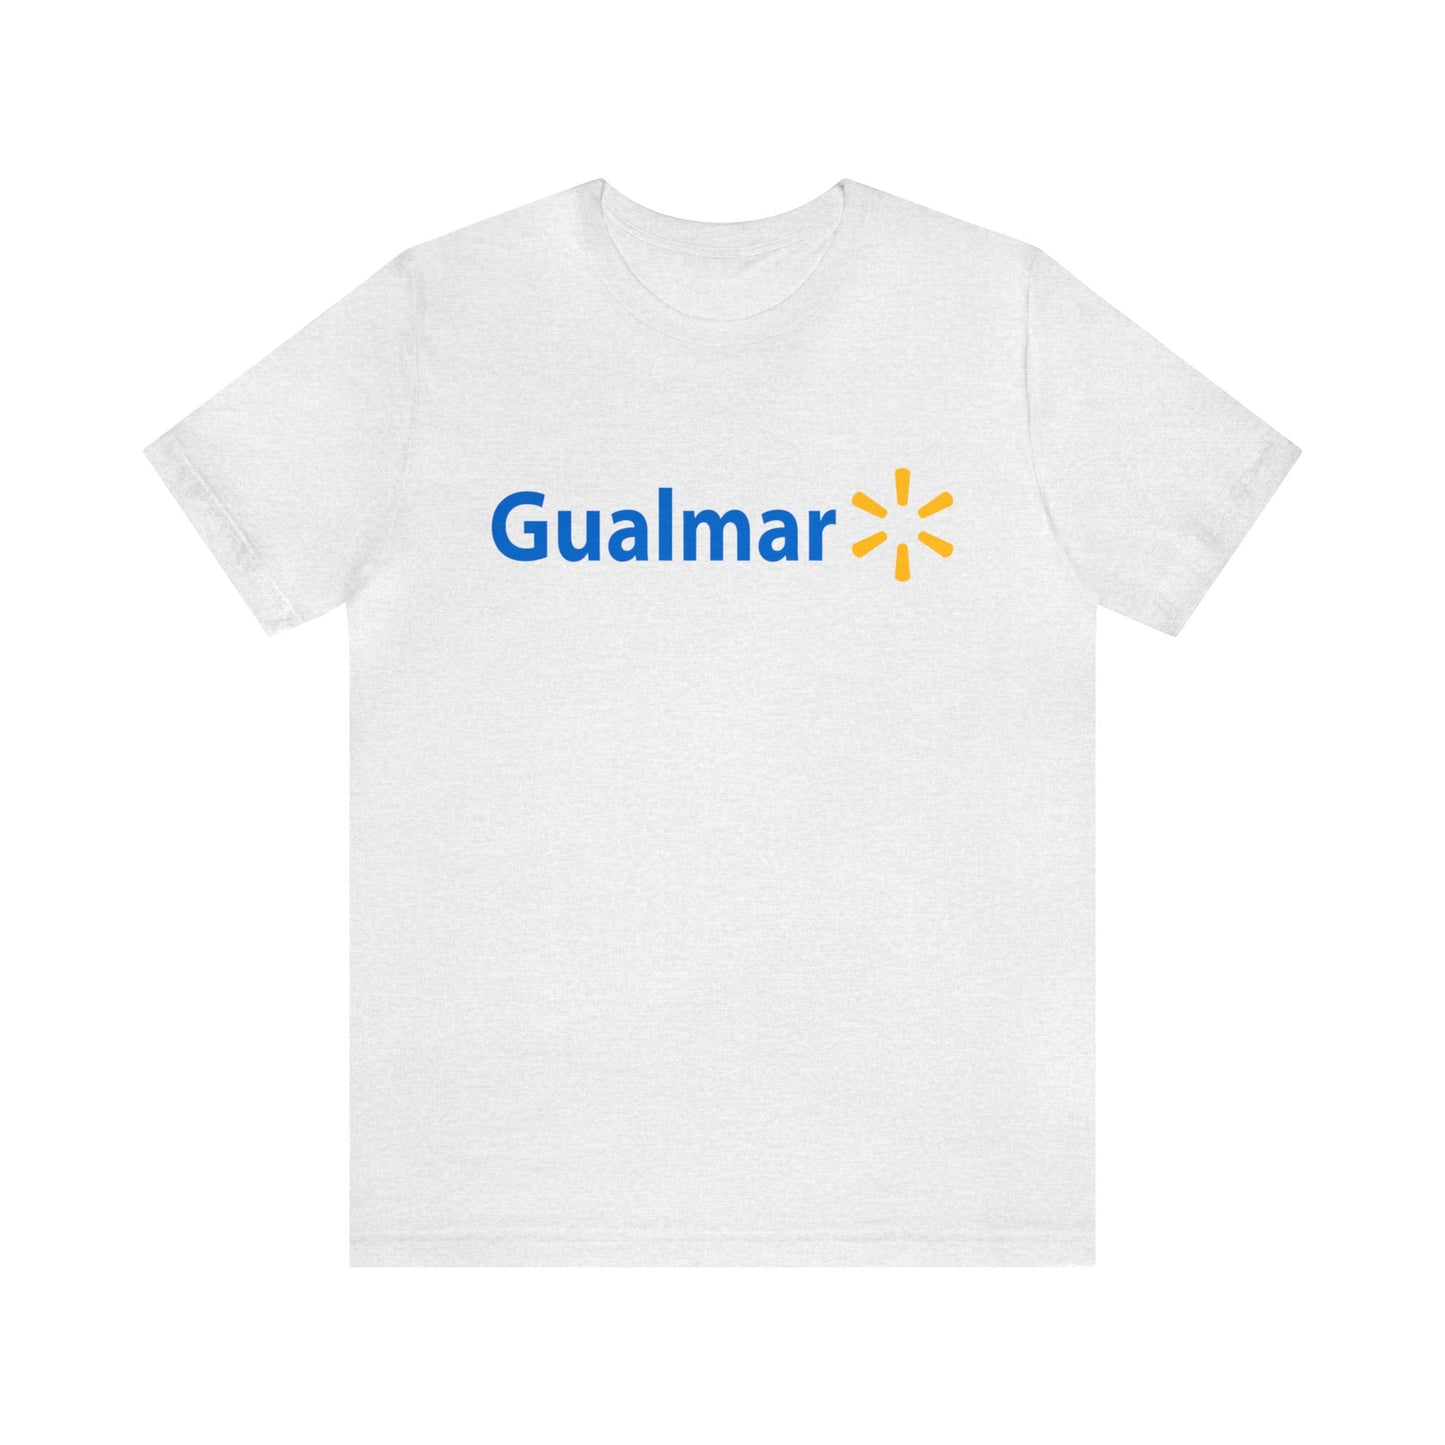 Gualmar T-Shirt - Hispanic Inspired Walmart Parody